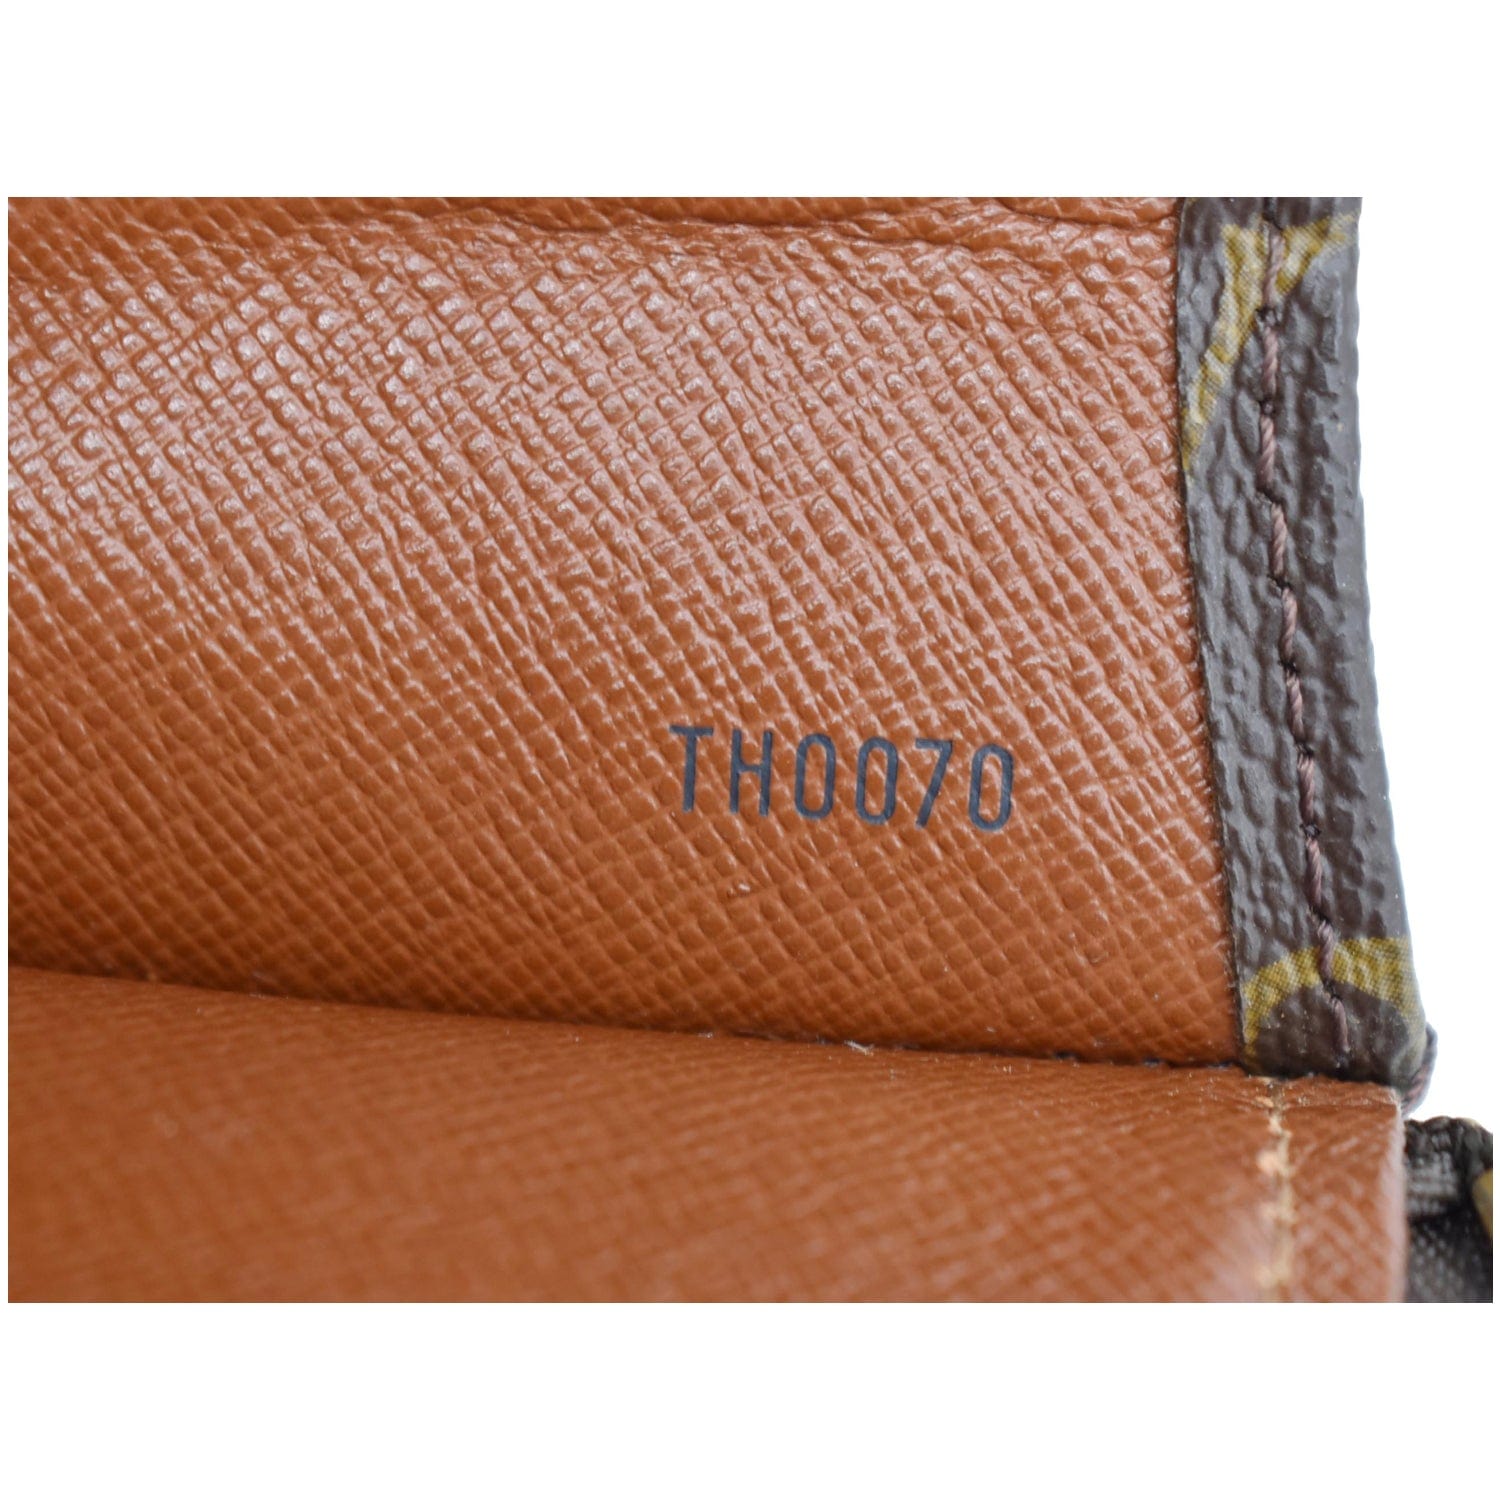 Louis Vuitton Monogram Portfolio - Brown Portfolios & Pouches, Bags -  LOU812266